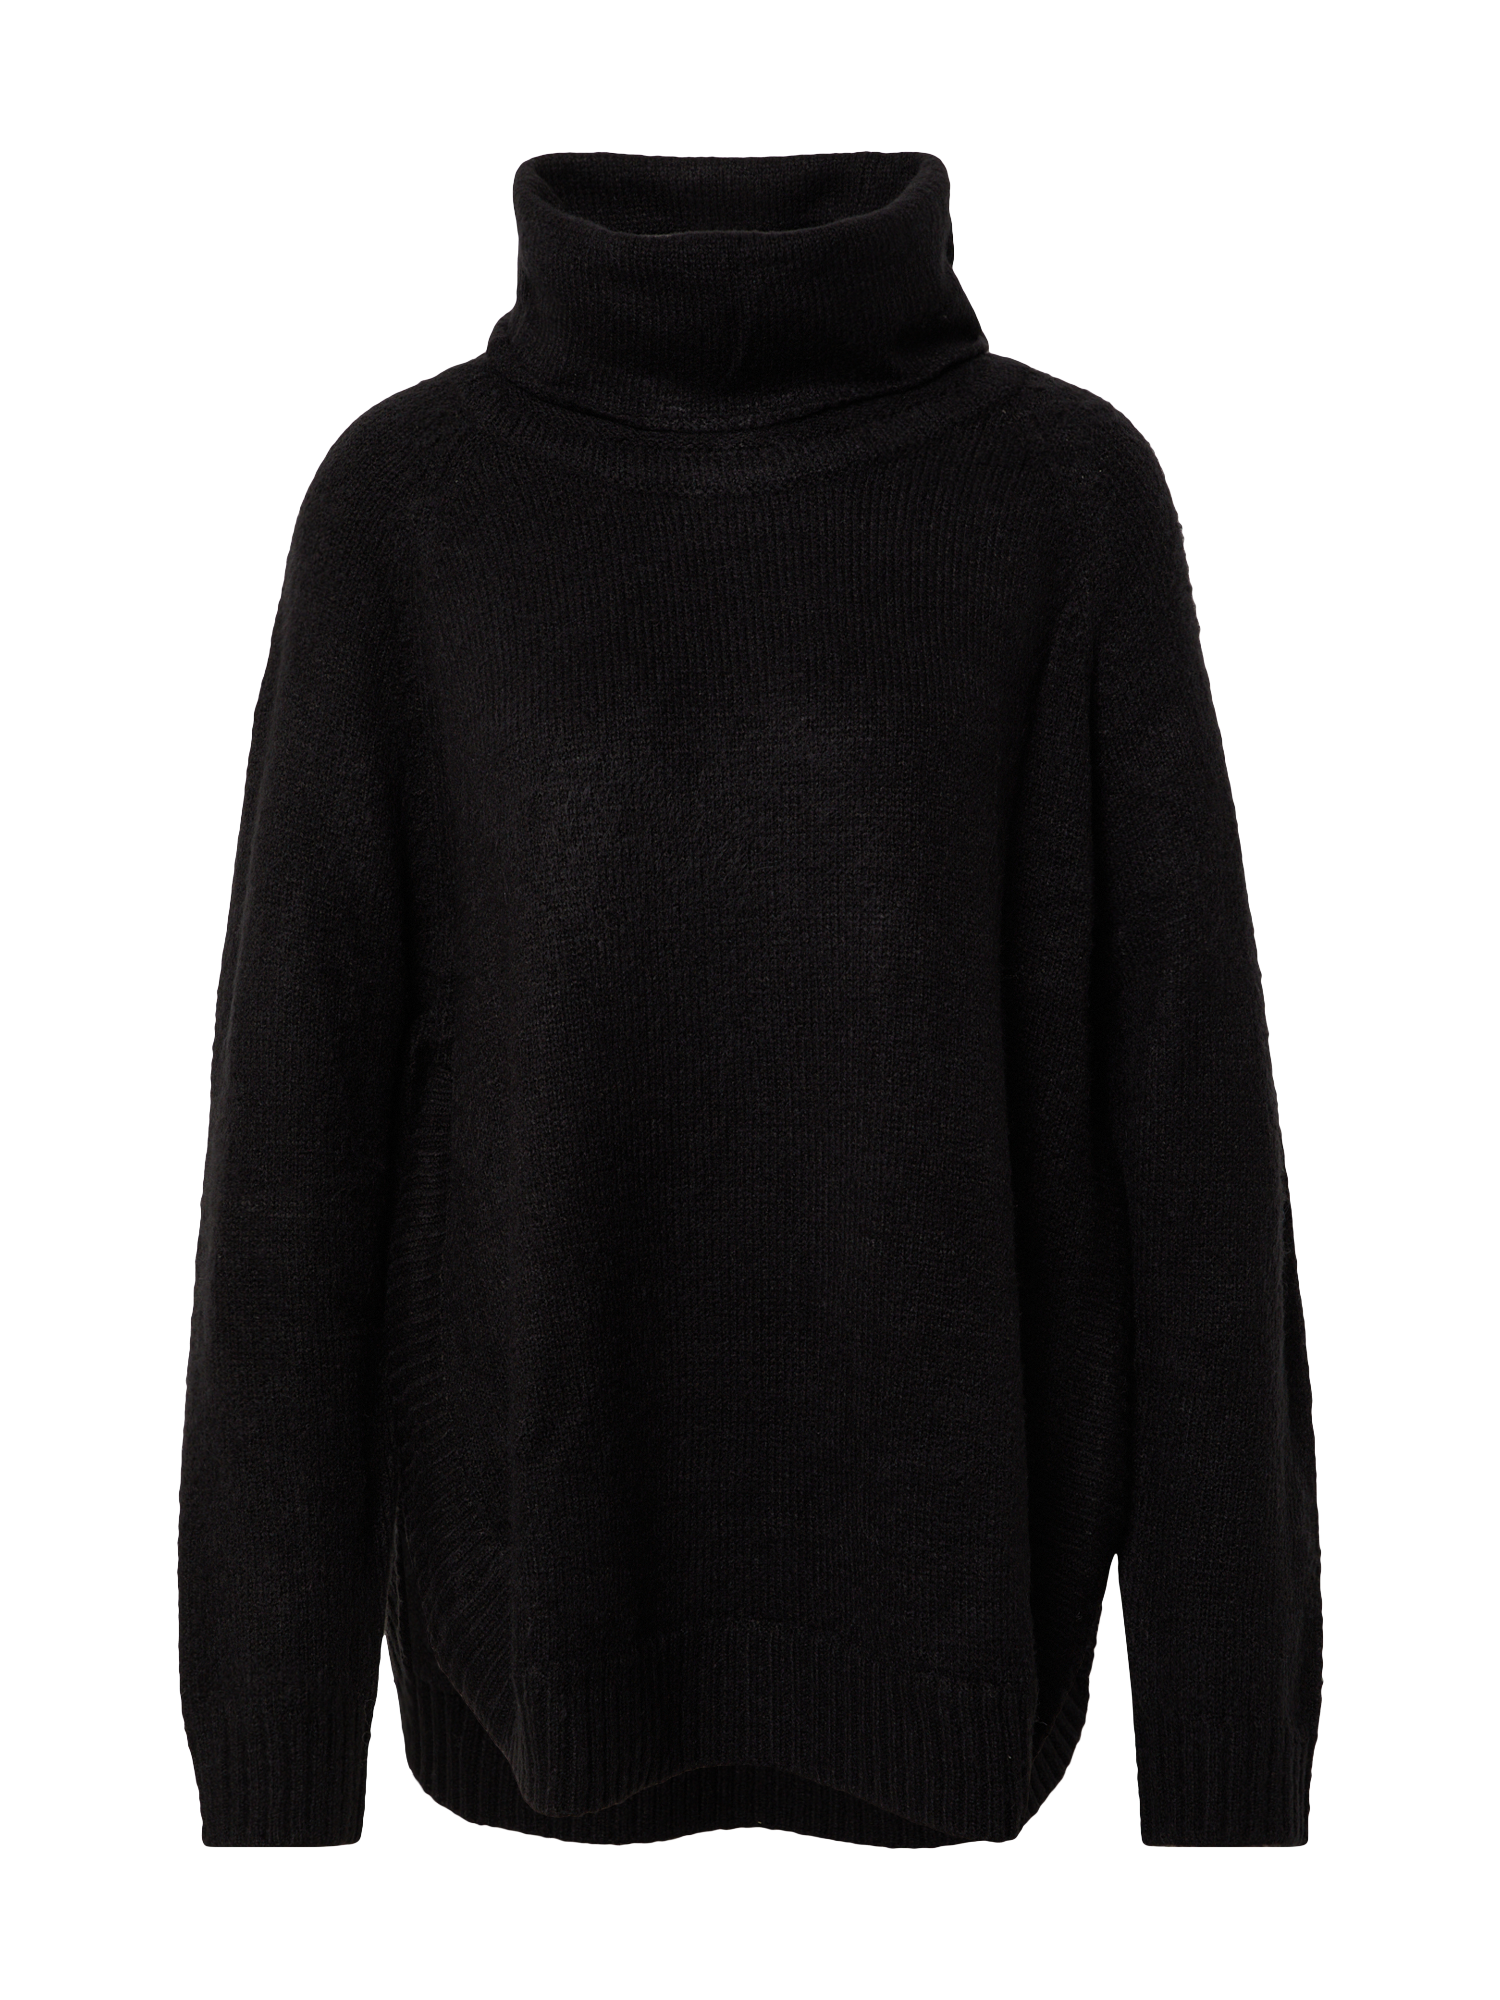 Swetry & dzianina Odzież  Sweter Josefina w kolorze Czarnym 